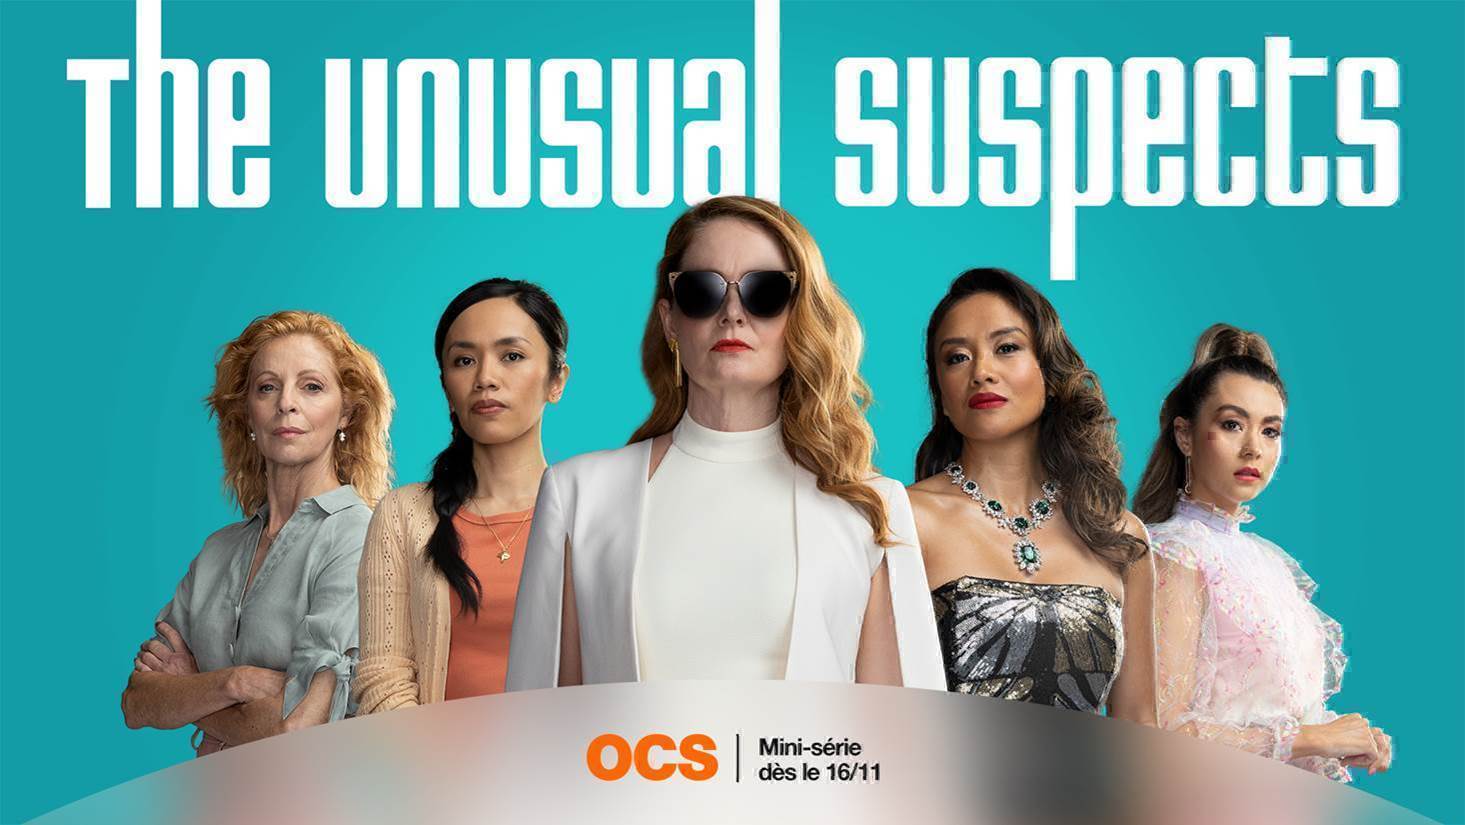 the unusual suspects The Unusual Suspects : La mini-série disponible sur OCS